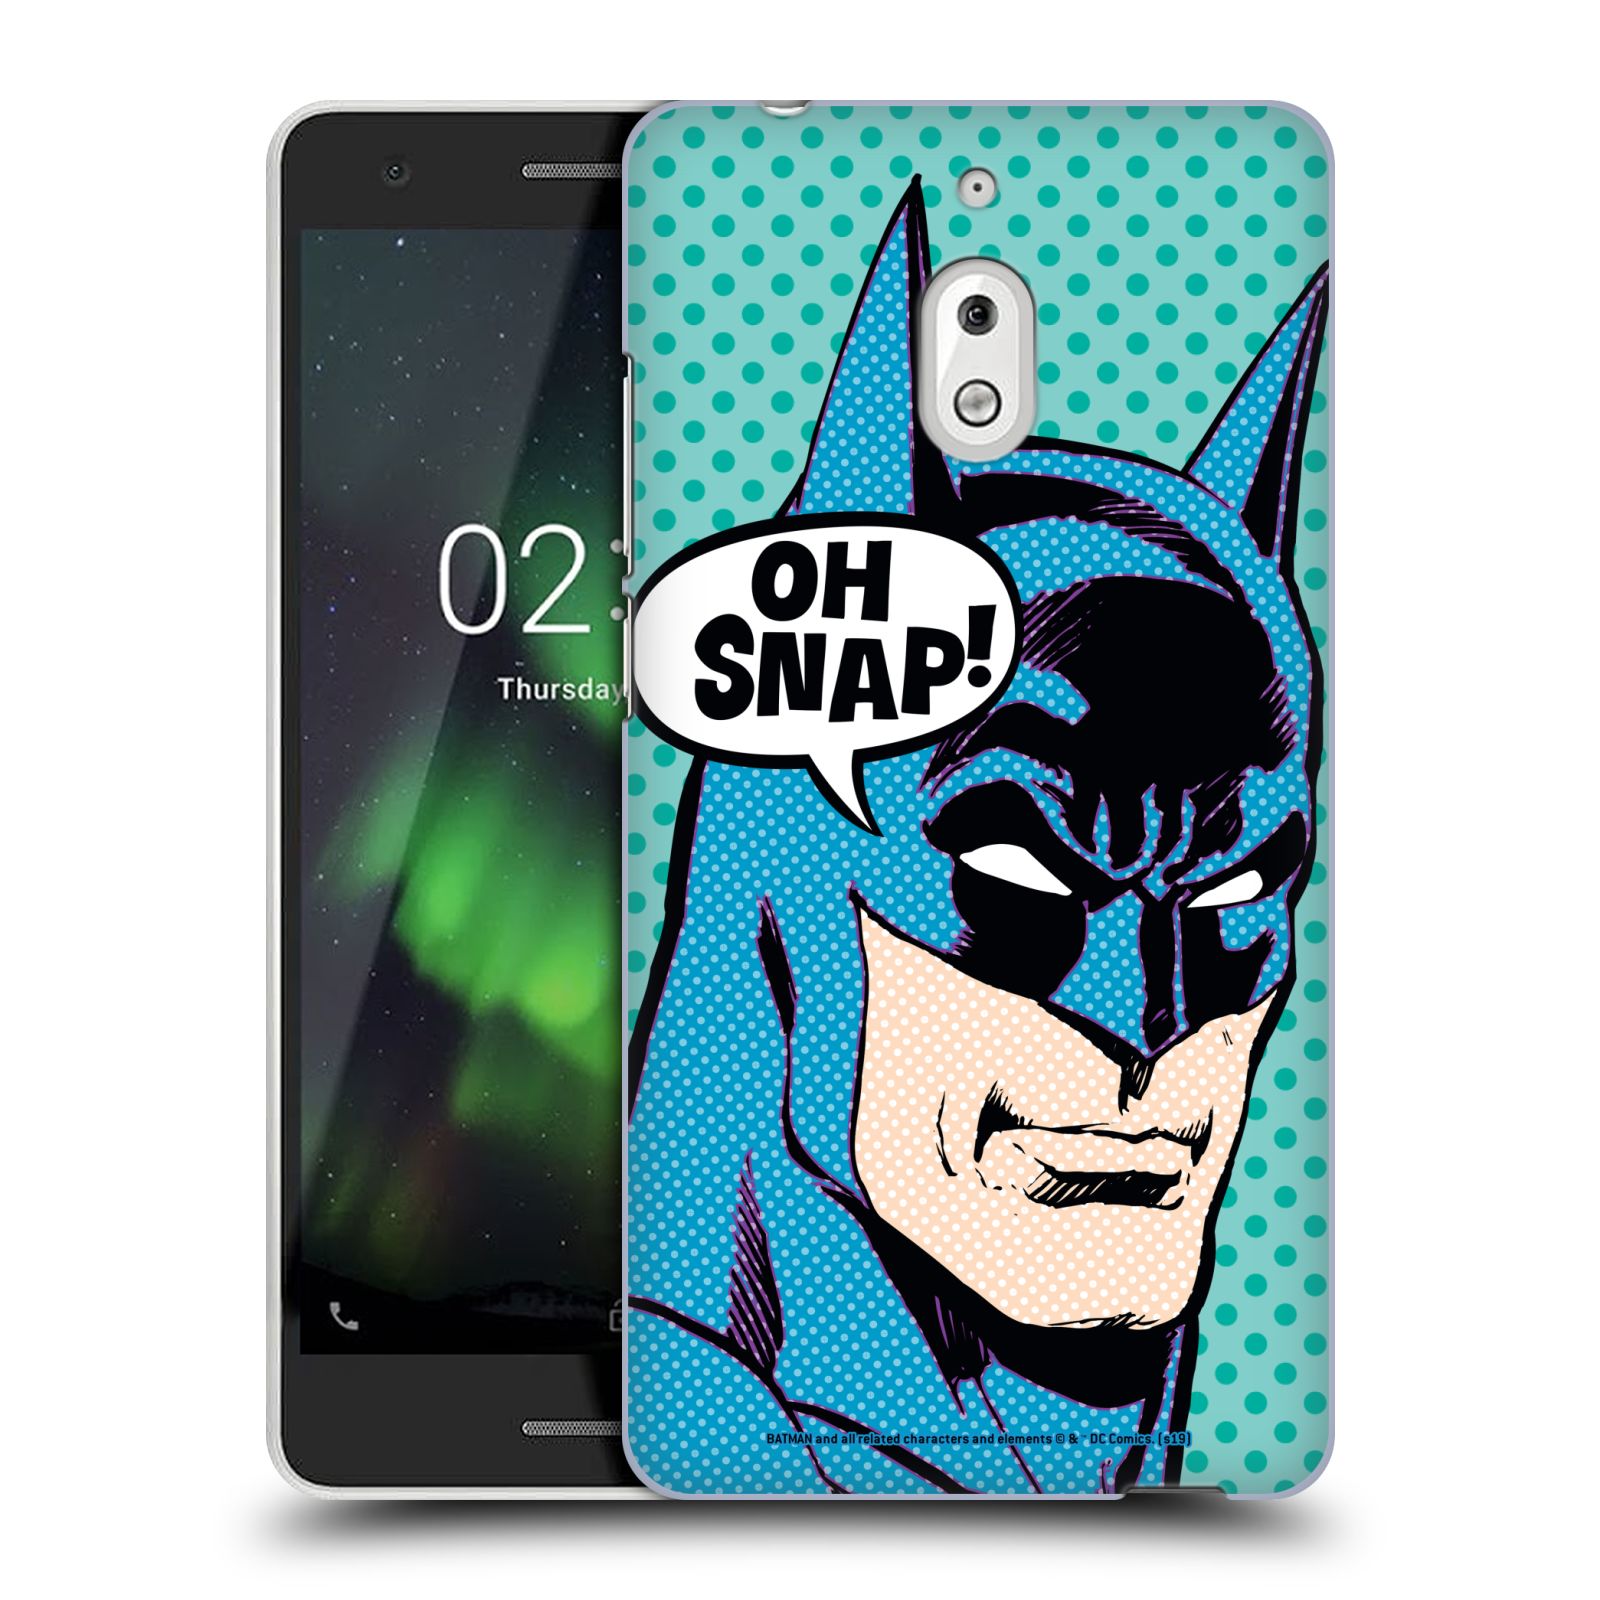 Pouzdro na mobil Nokia 2.1 - HEAD CASE - DC komix Batman Pop Art tvář